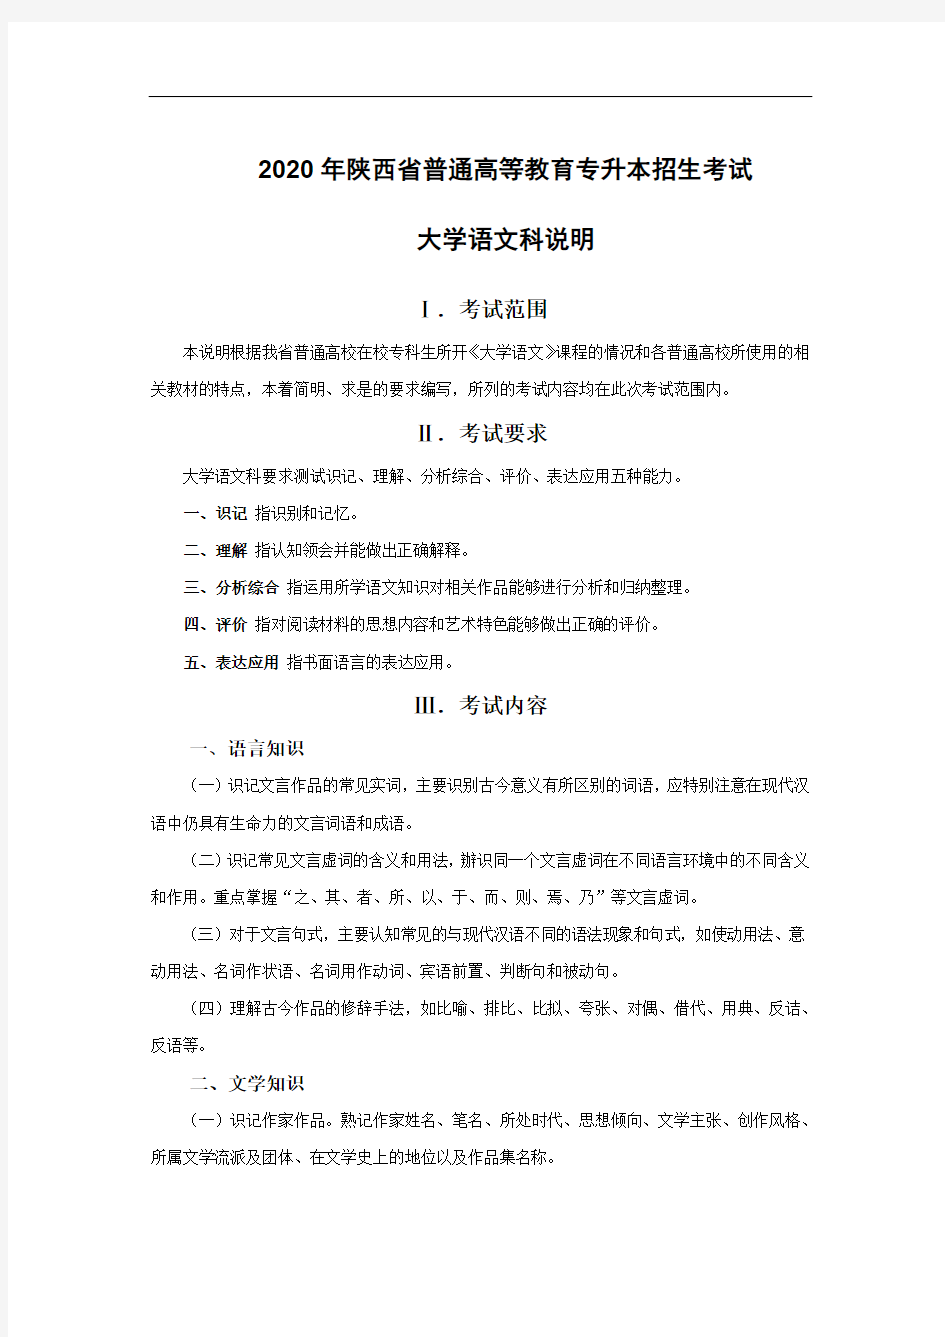 2020年陕西省普通高等教育专升本招生考试大学语文科考试说明